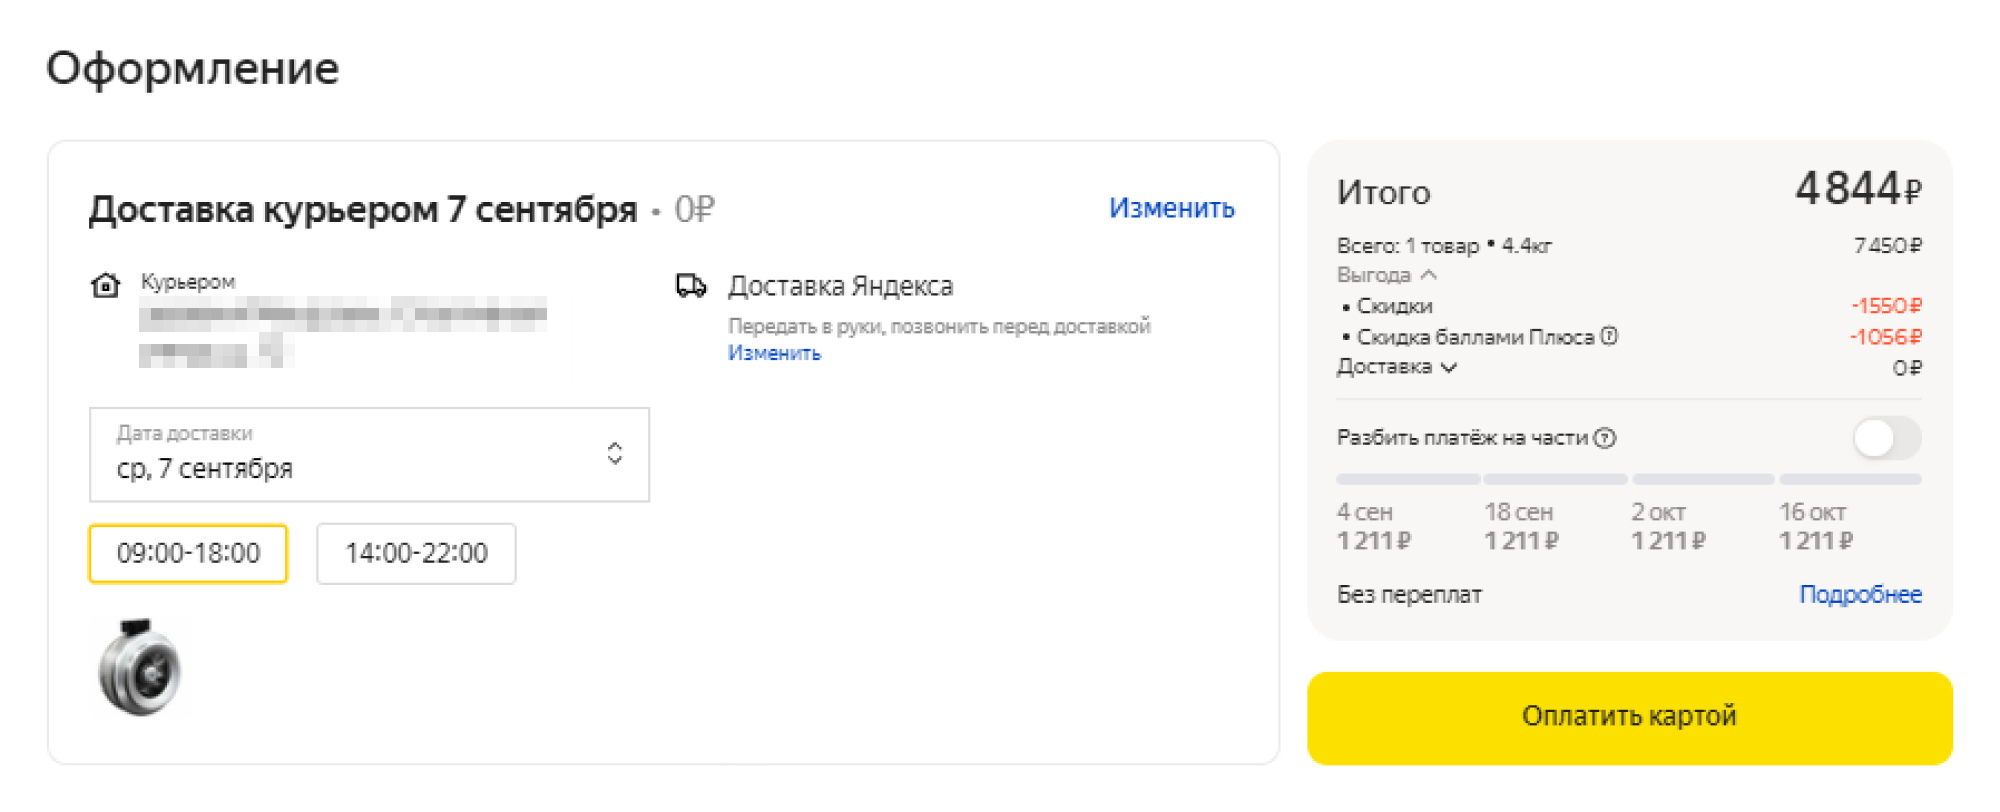 При подписке на «Яндекс-плюс» заказ мне доставили бесплатно. К тому же я выбрал товар со скидкой в 1550 ₽ и еще 1056 ₽ мог списать баллами